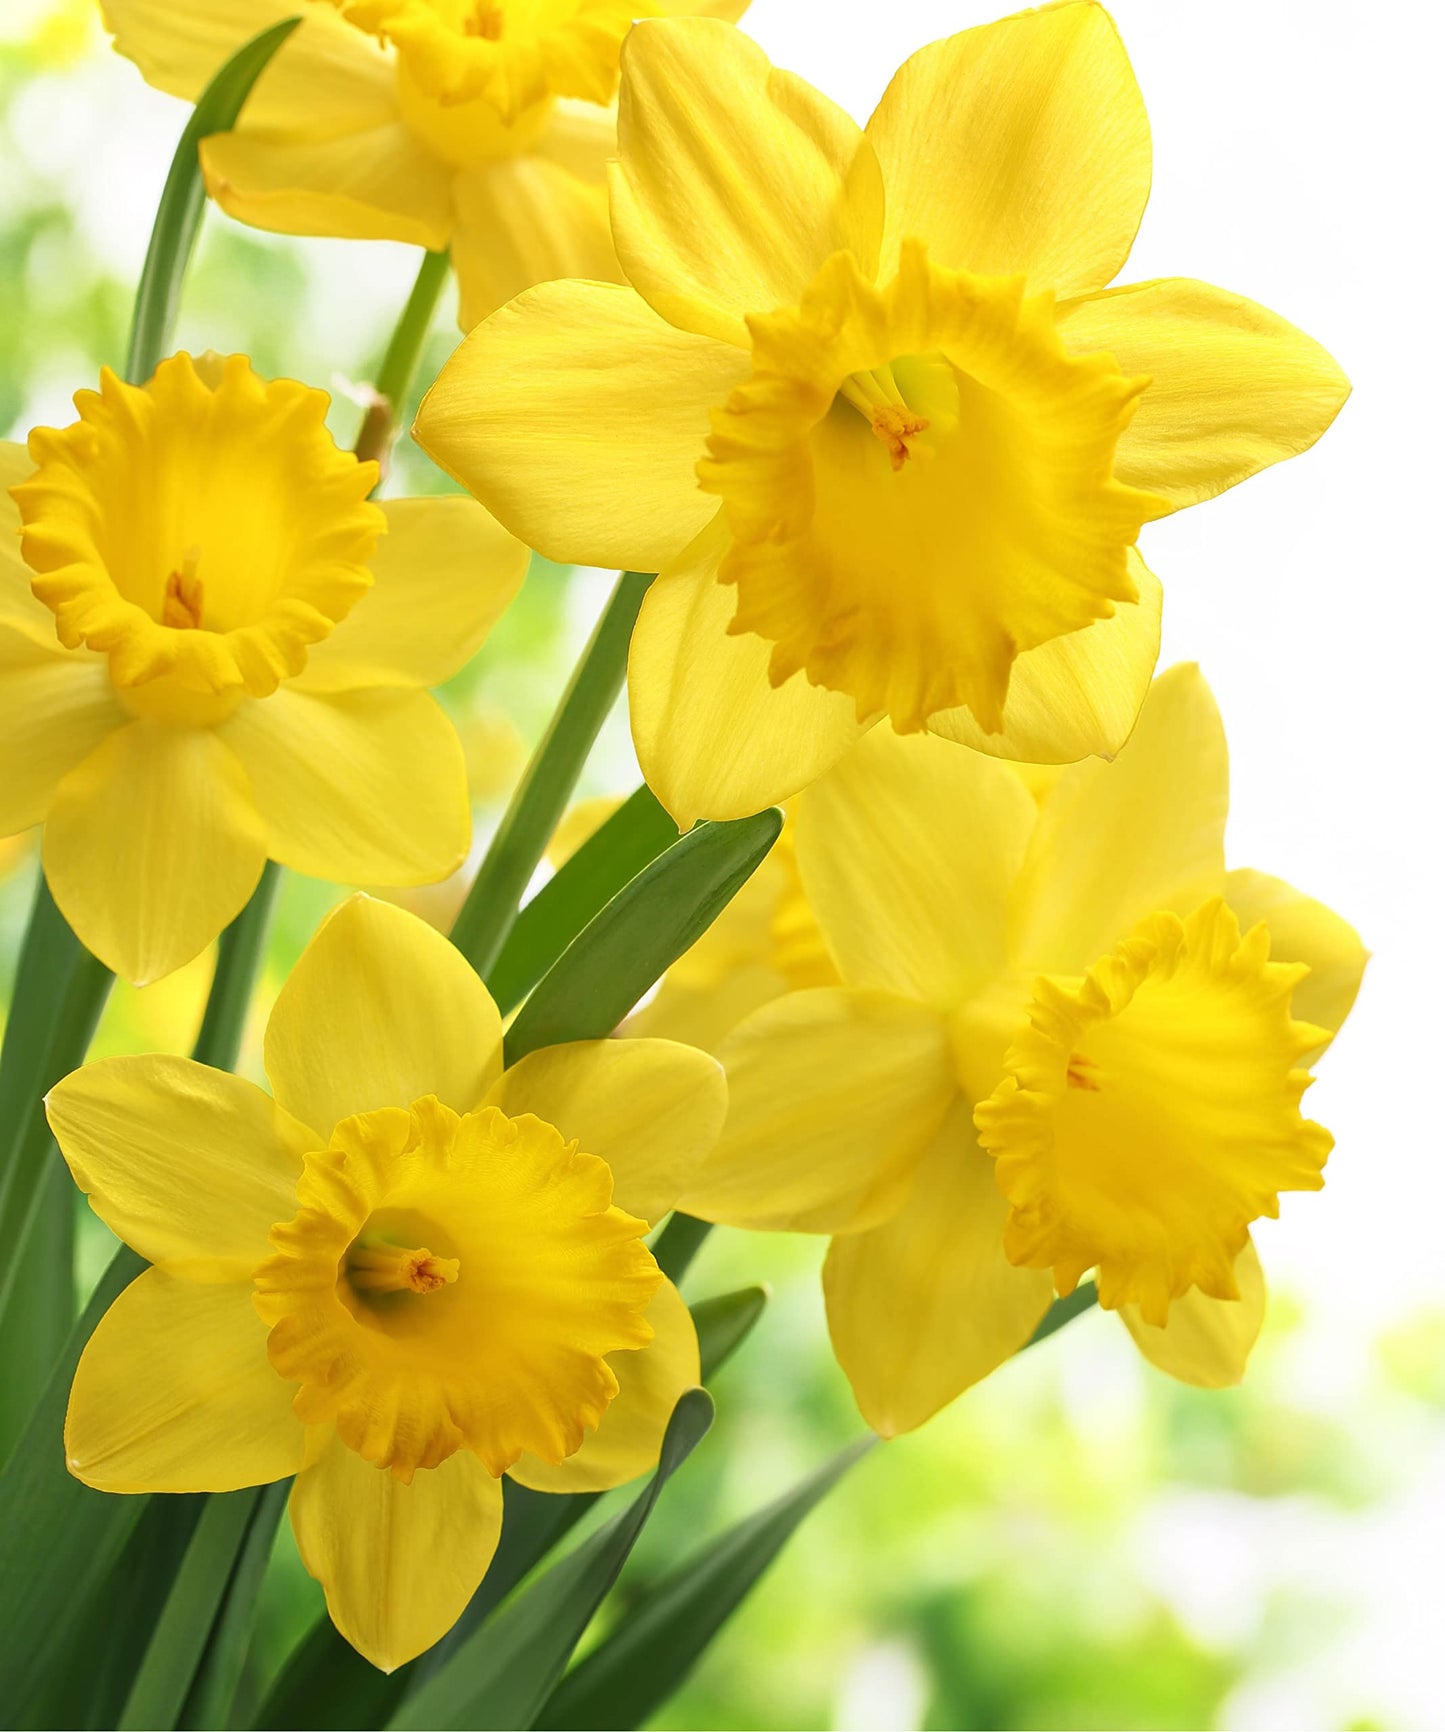 Daffodil 'King Alfred' - 10 x Premium Bulb Pack